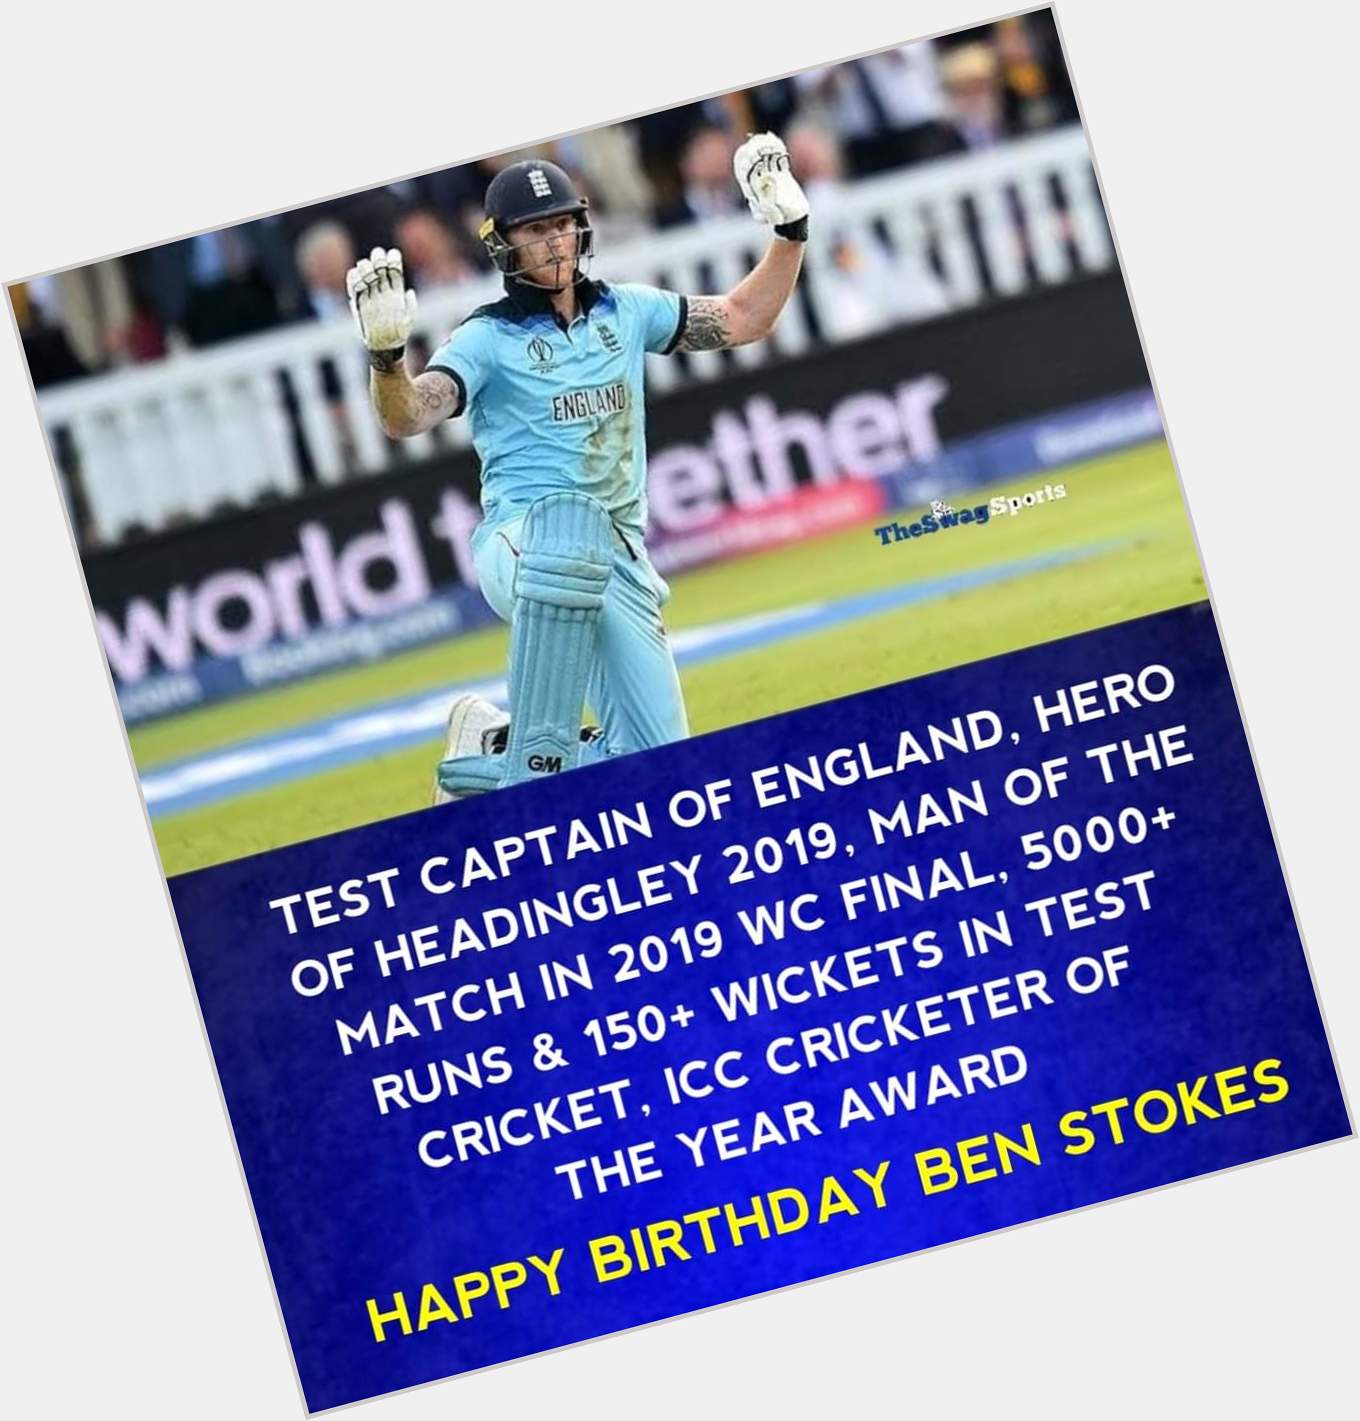 Happy Birthday Ben Stokes.   